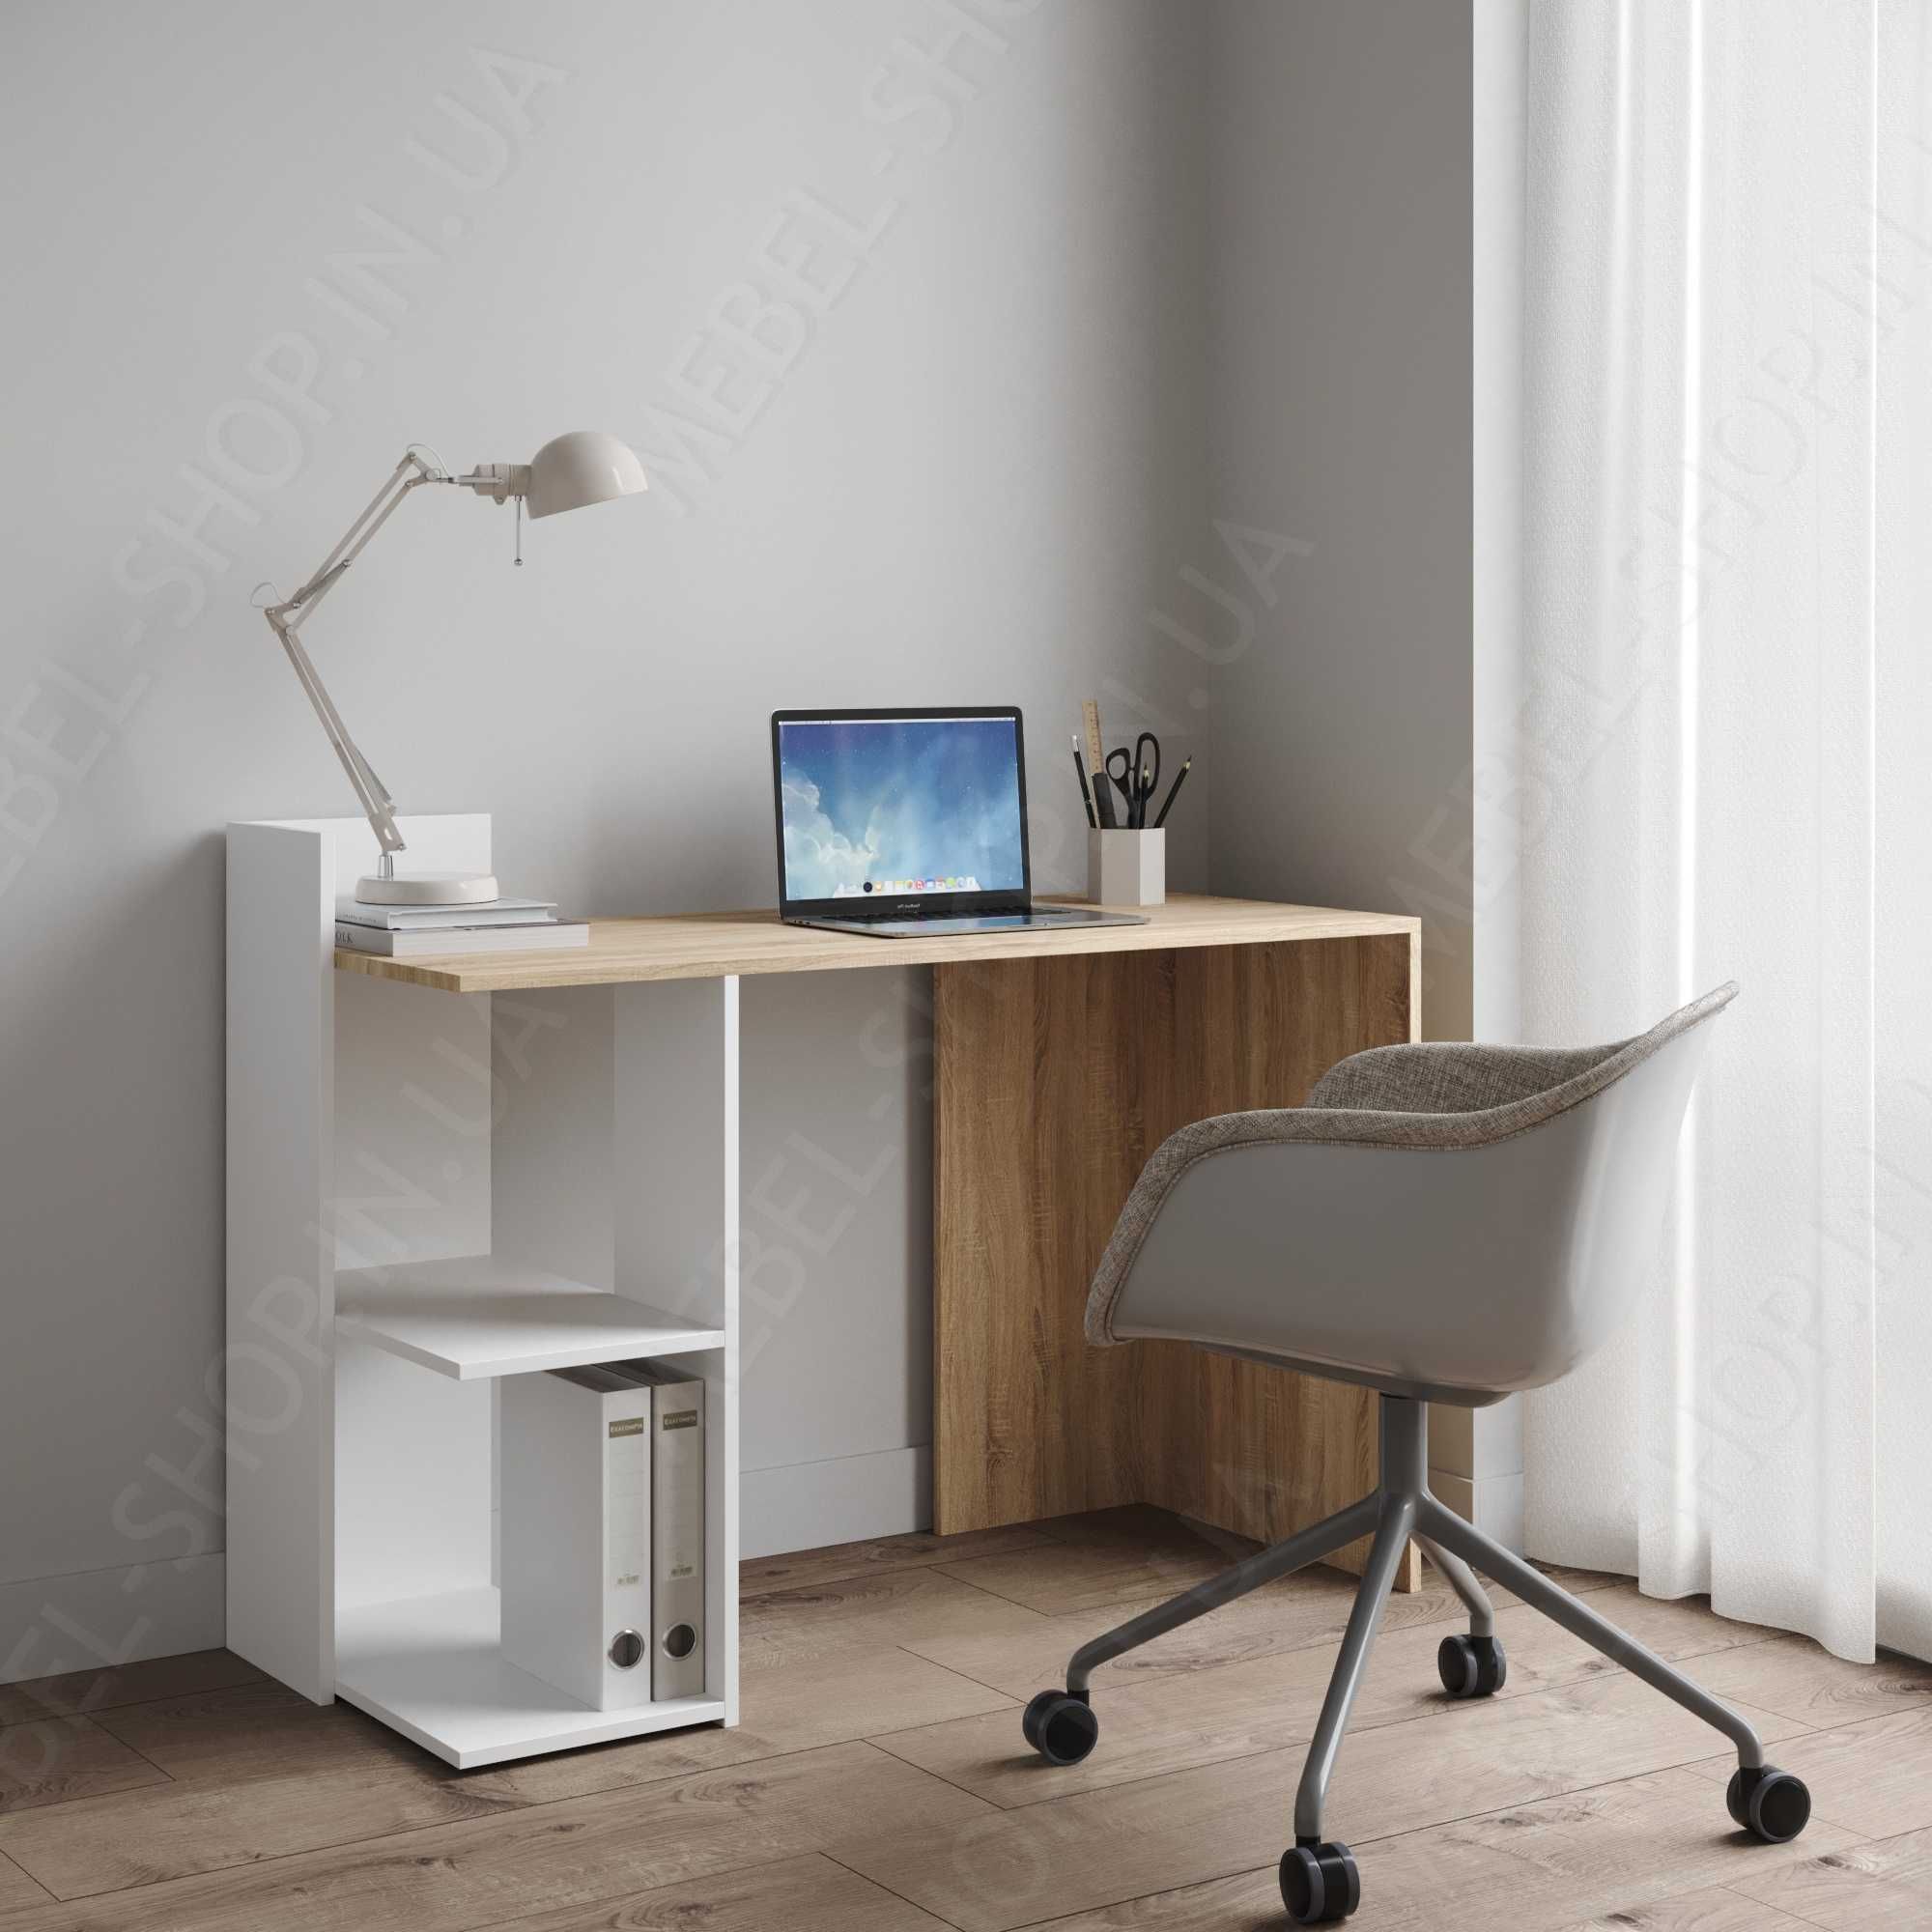 Письменный стол с полками, компьютерный стол, малогабаритный.